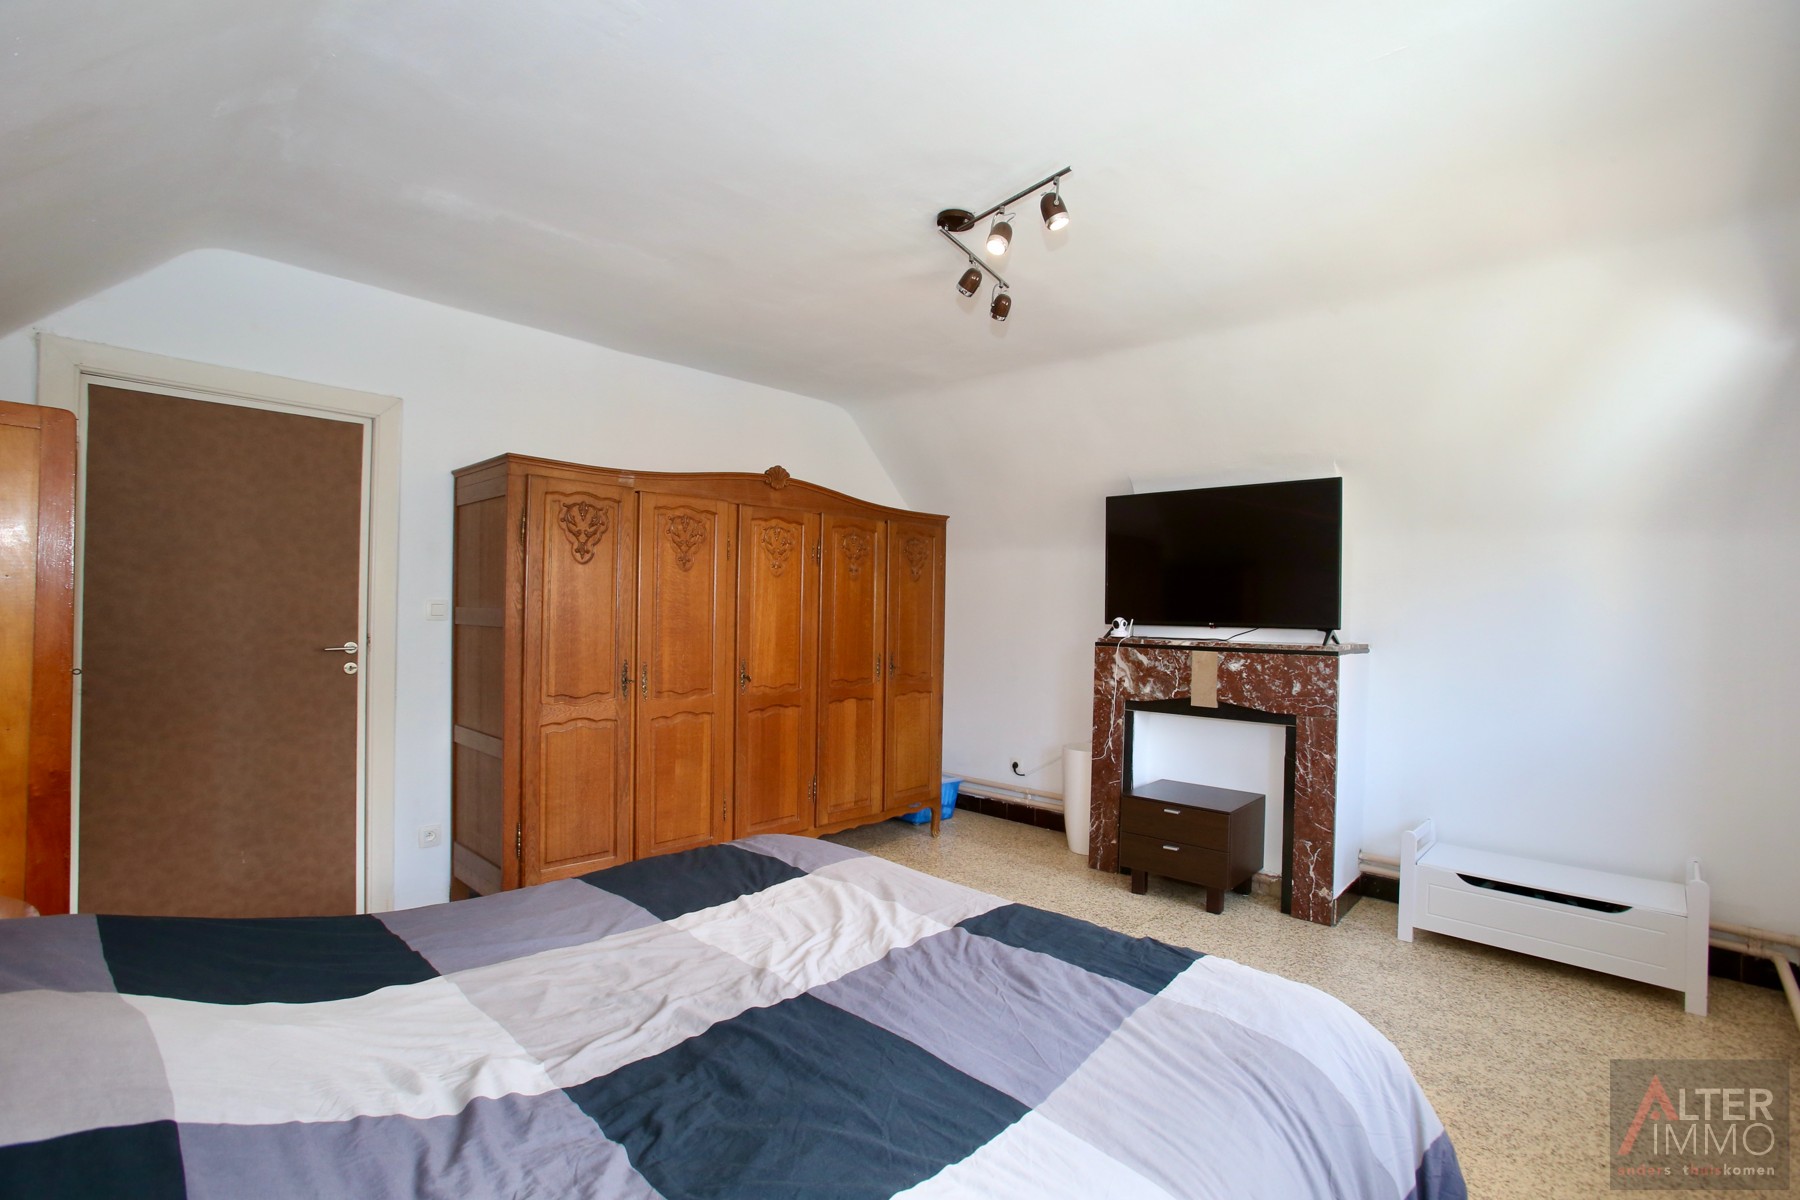 Gunstig gelegen, vrijstaande eengezinswoning met 2 slaapkamers op een perceel van 4a 03ca vlakbij het centrum van Beerse! foto 18